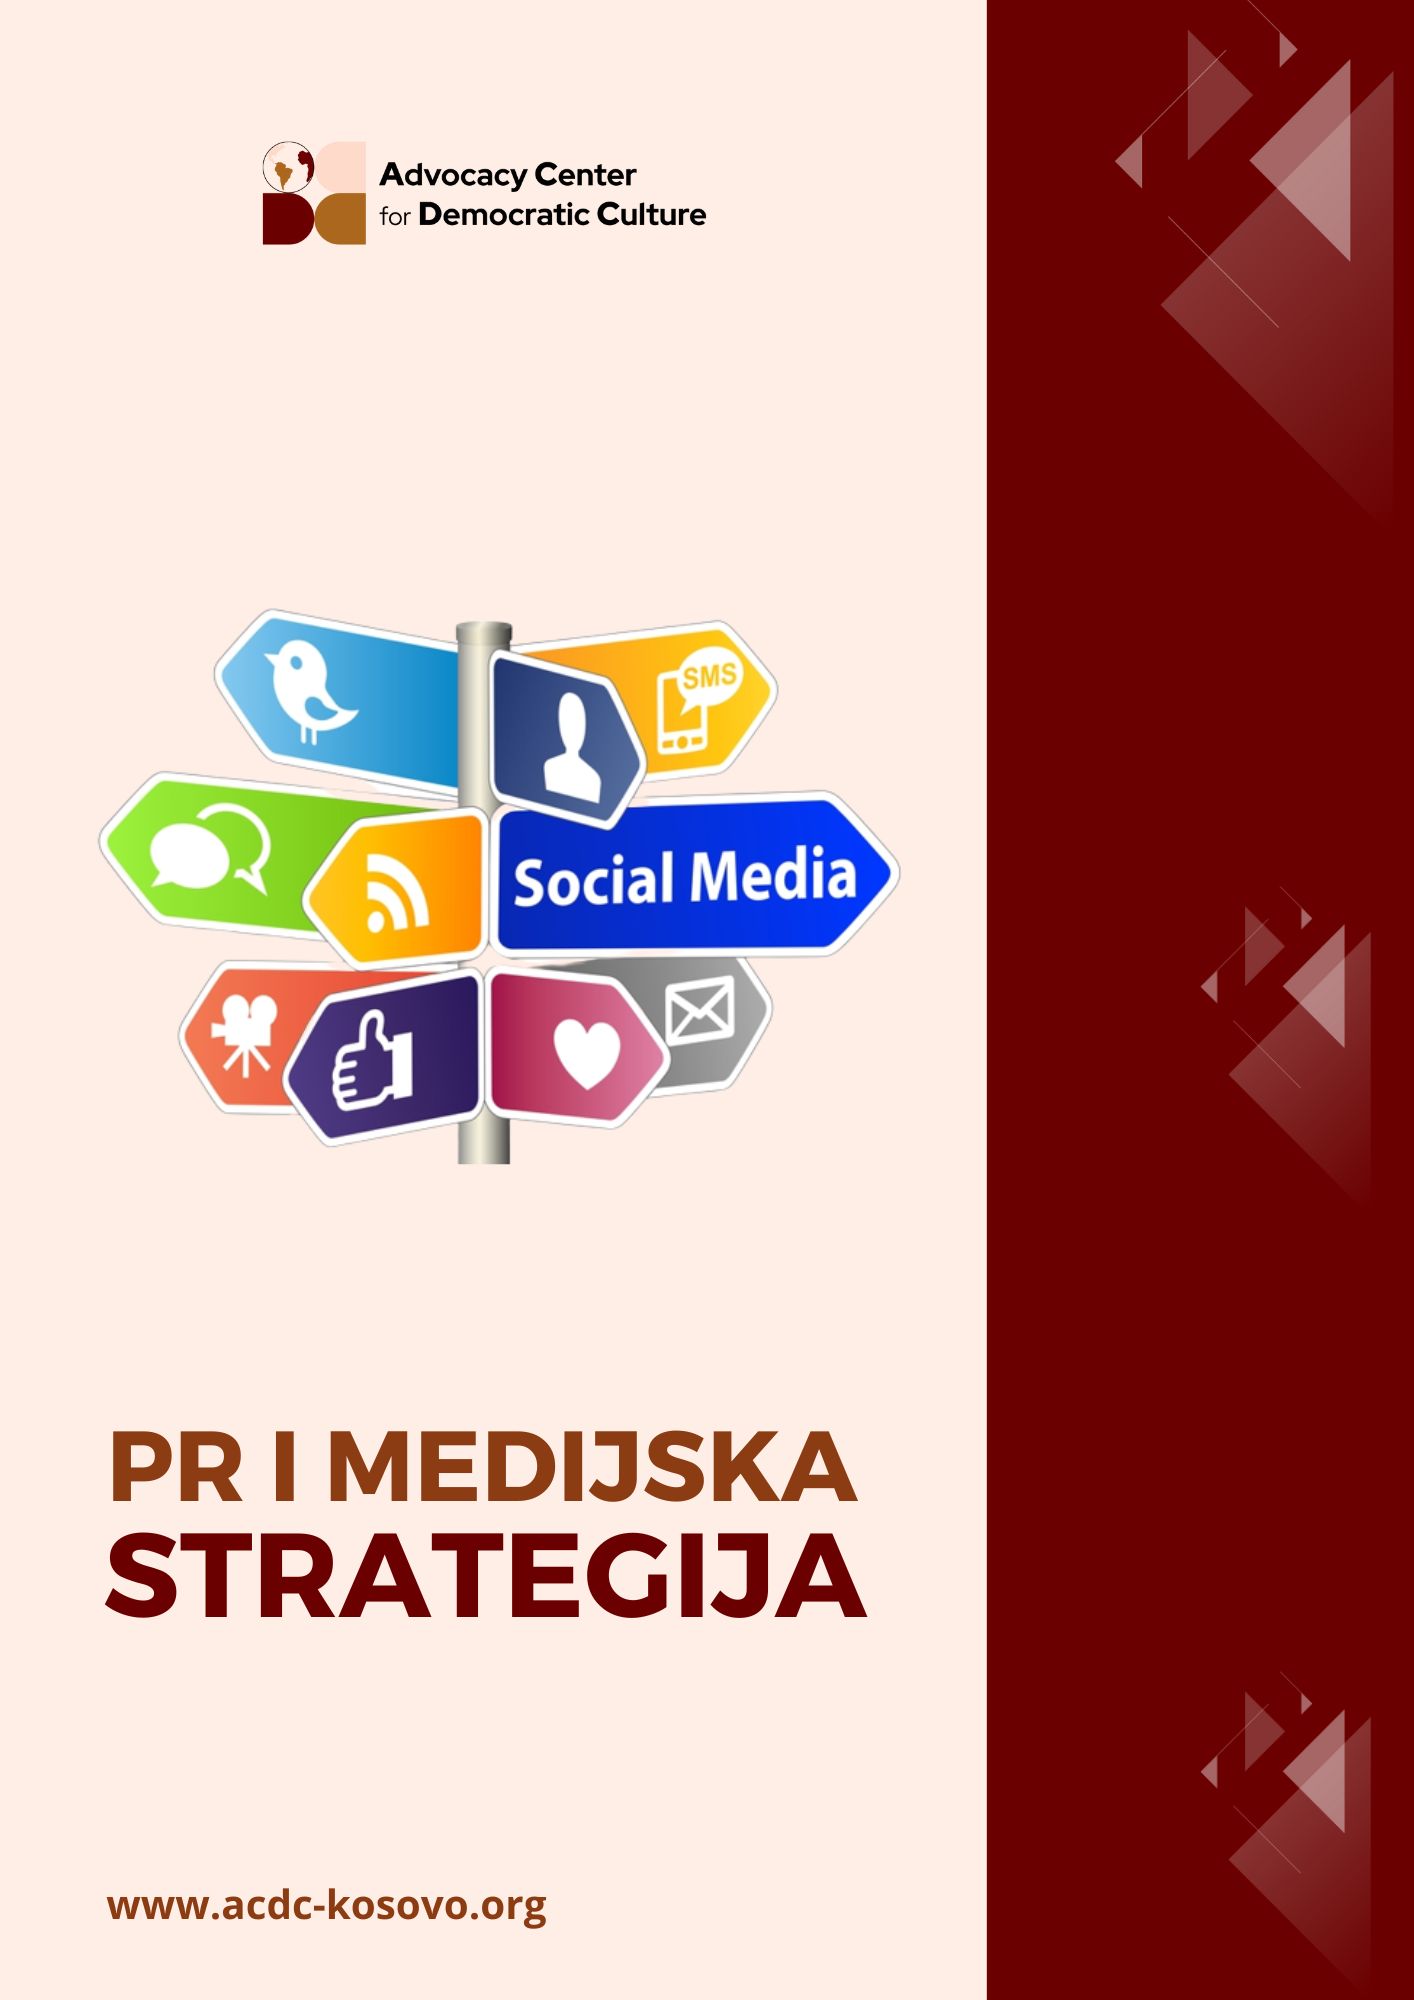 PR i medijska strategija